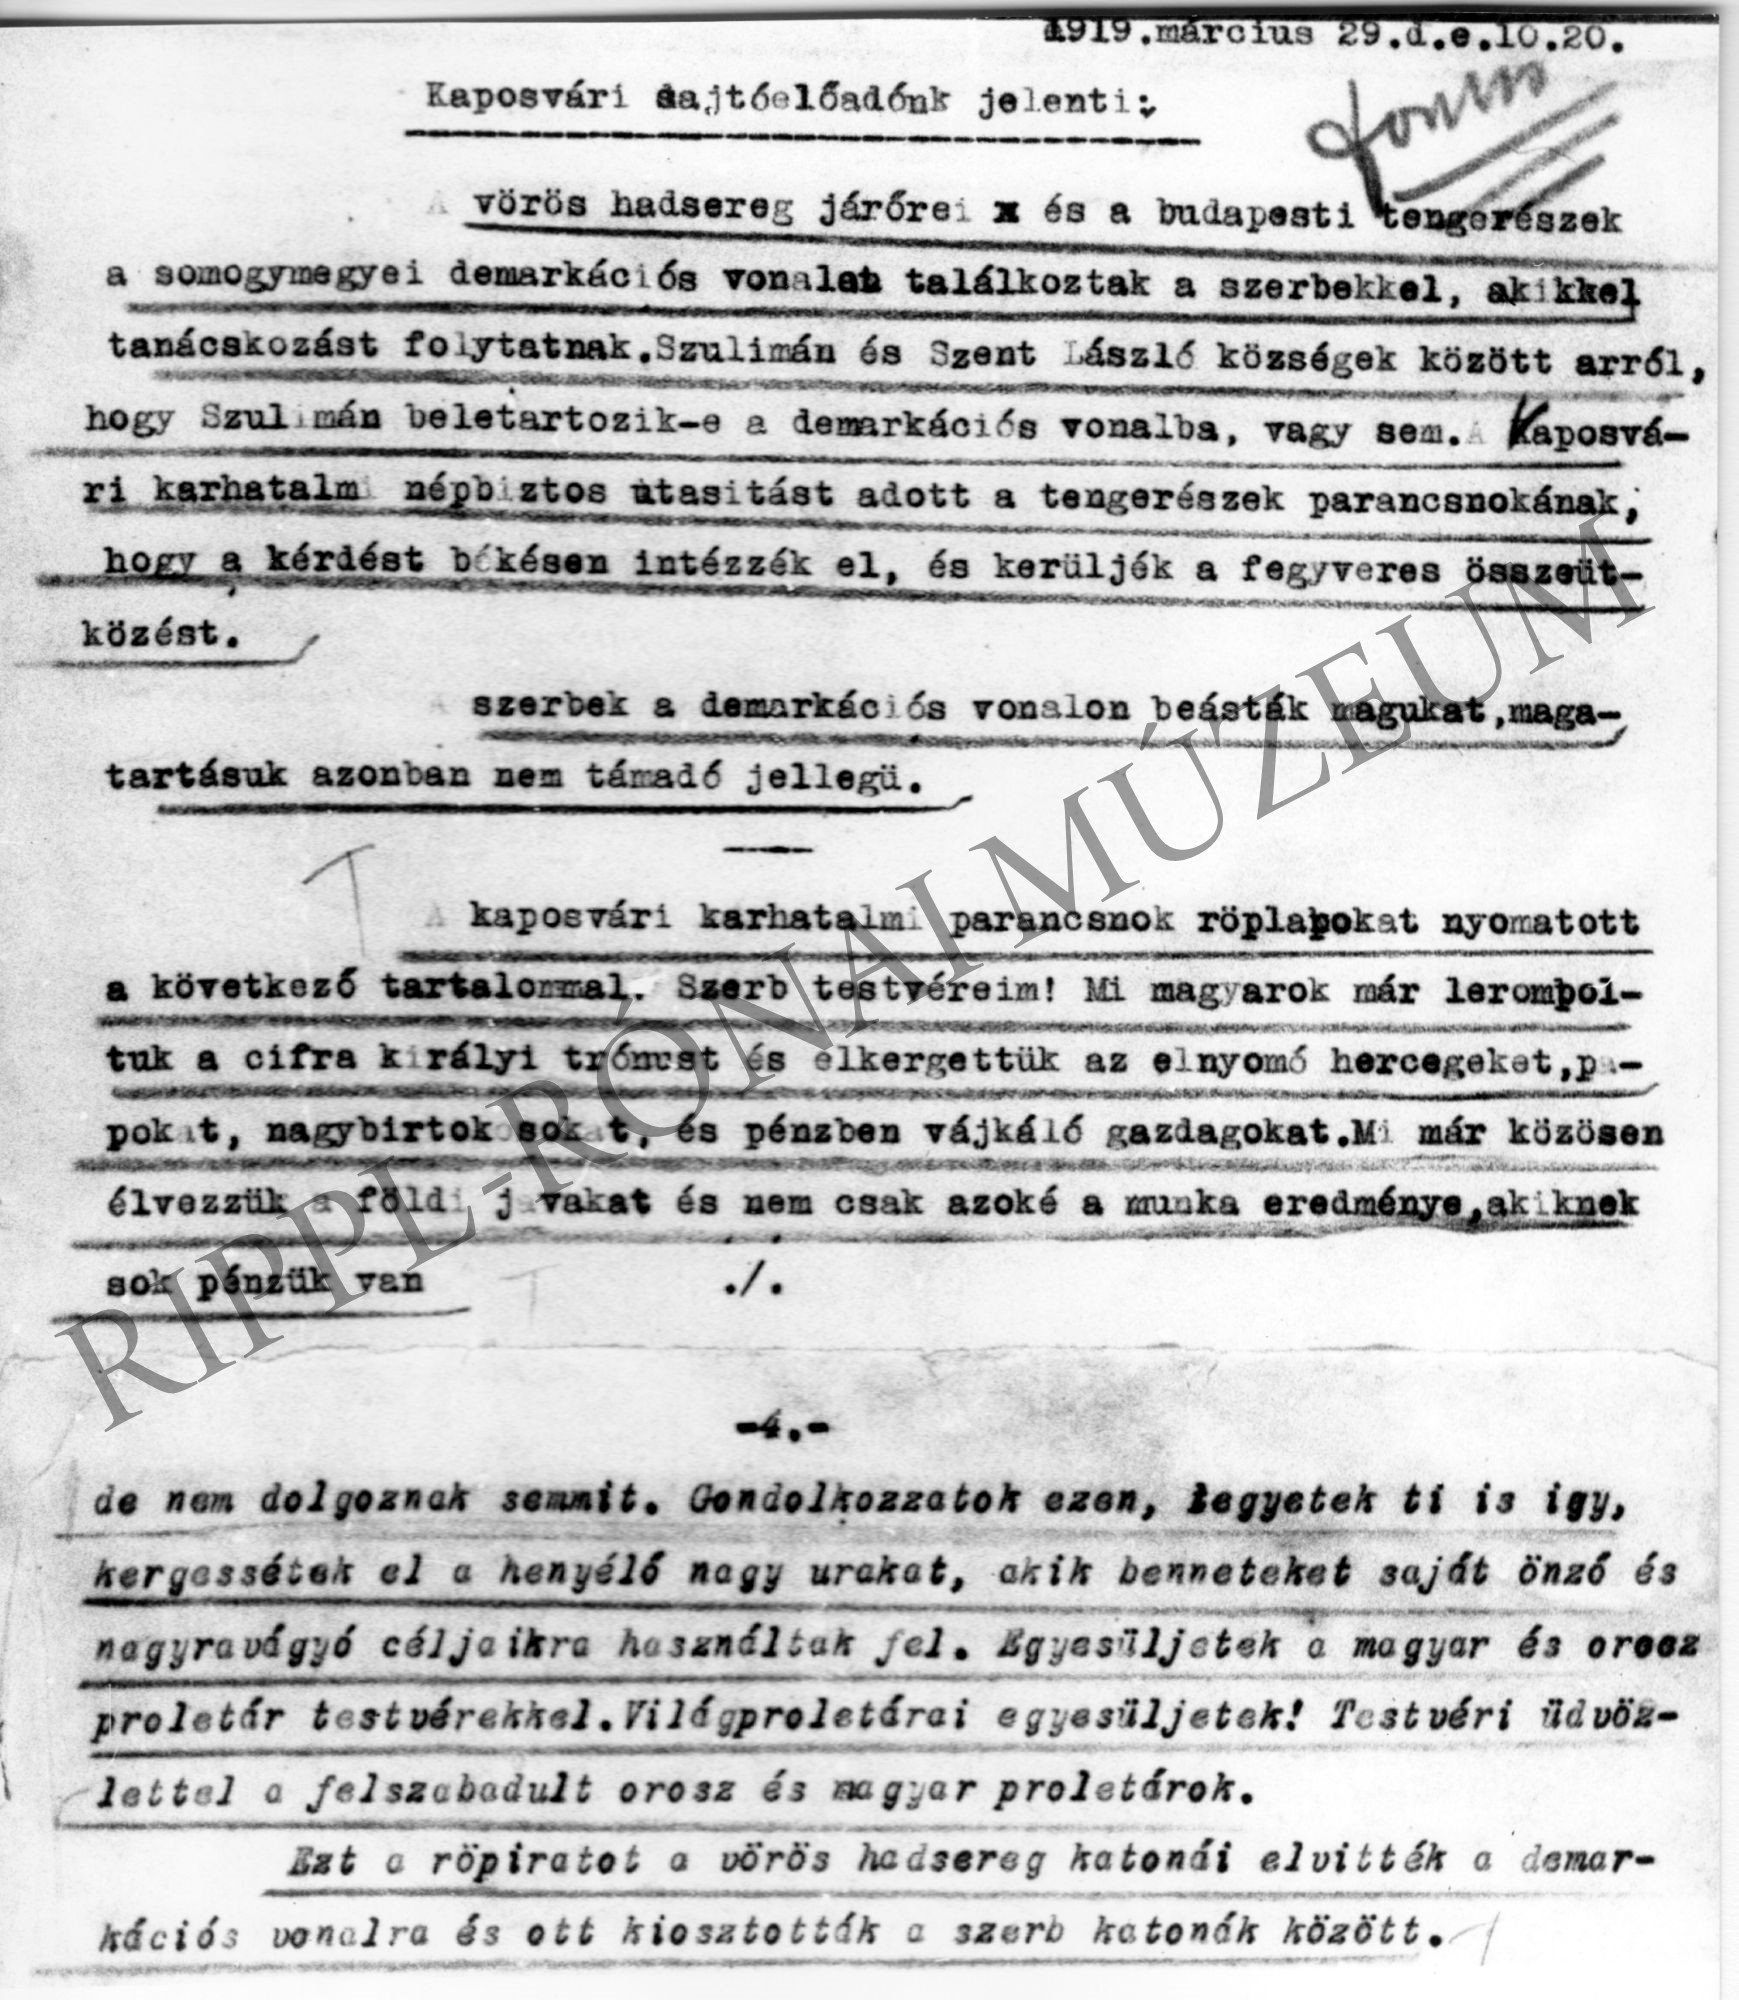 Kaposvári sajtóelőadó jelentése (1919. március 29.) A vörös hadsereg a somogyi demarkációs vonalnál találkozott a szerbekkel és agitálja őket (Rippl-Rónai Múzeum CC BY-NC-SA)